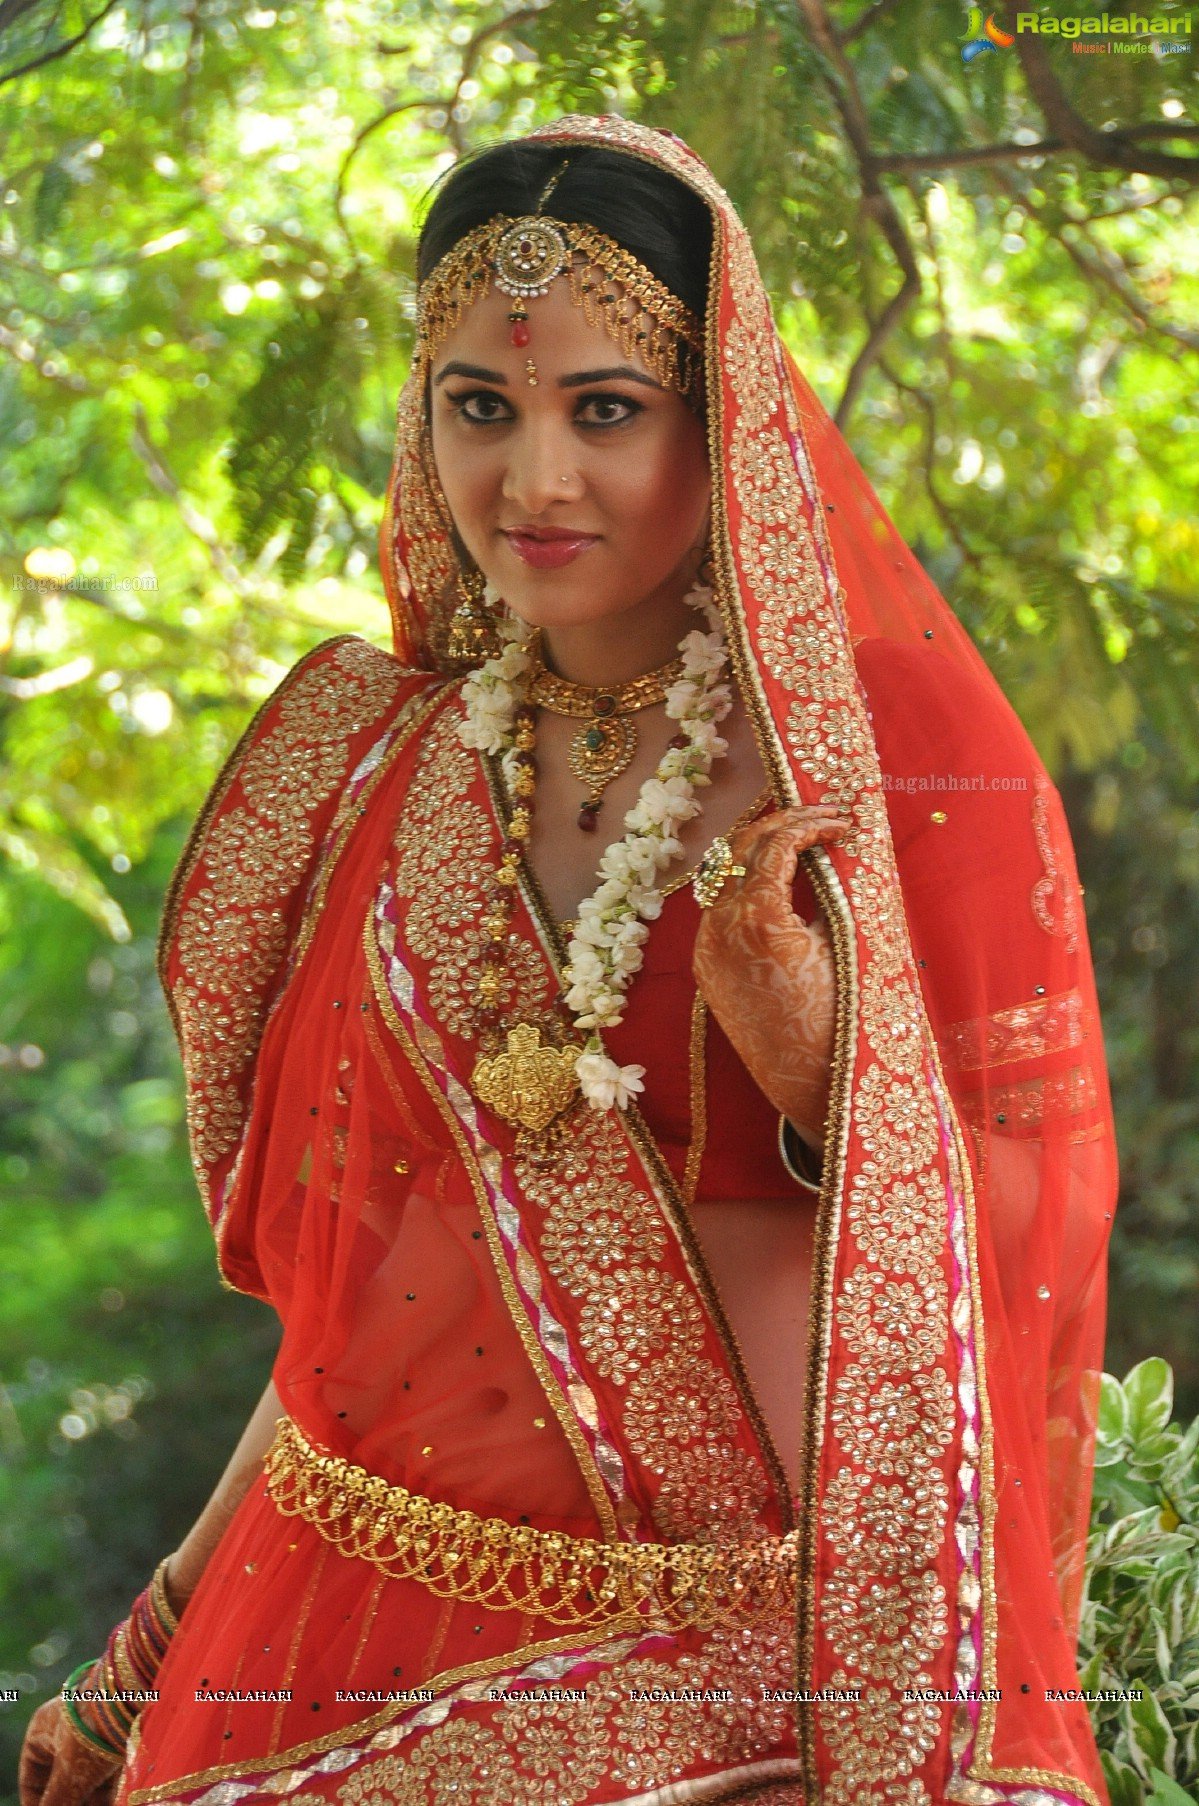 Nisha Kothari